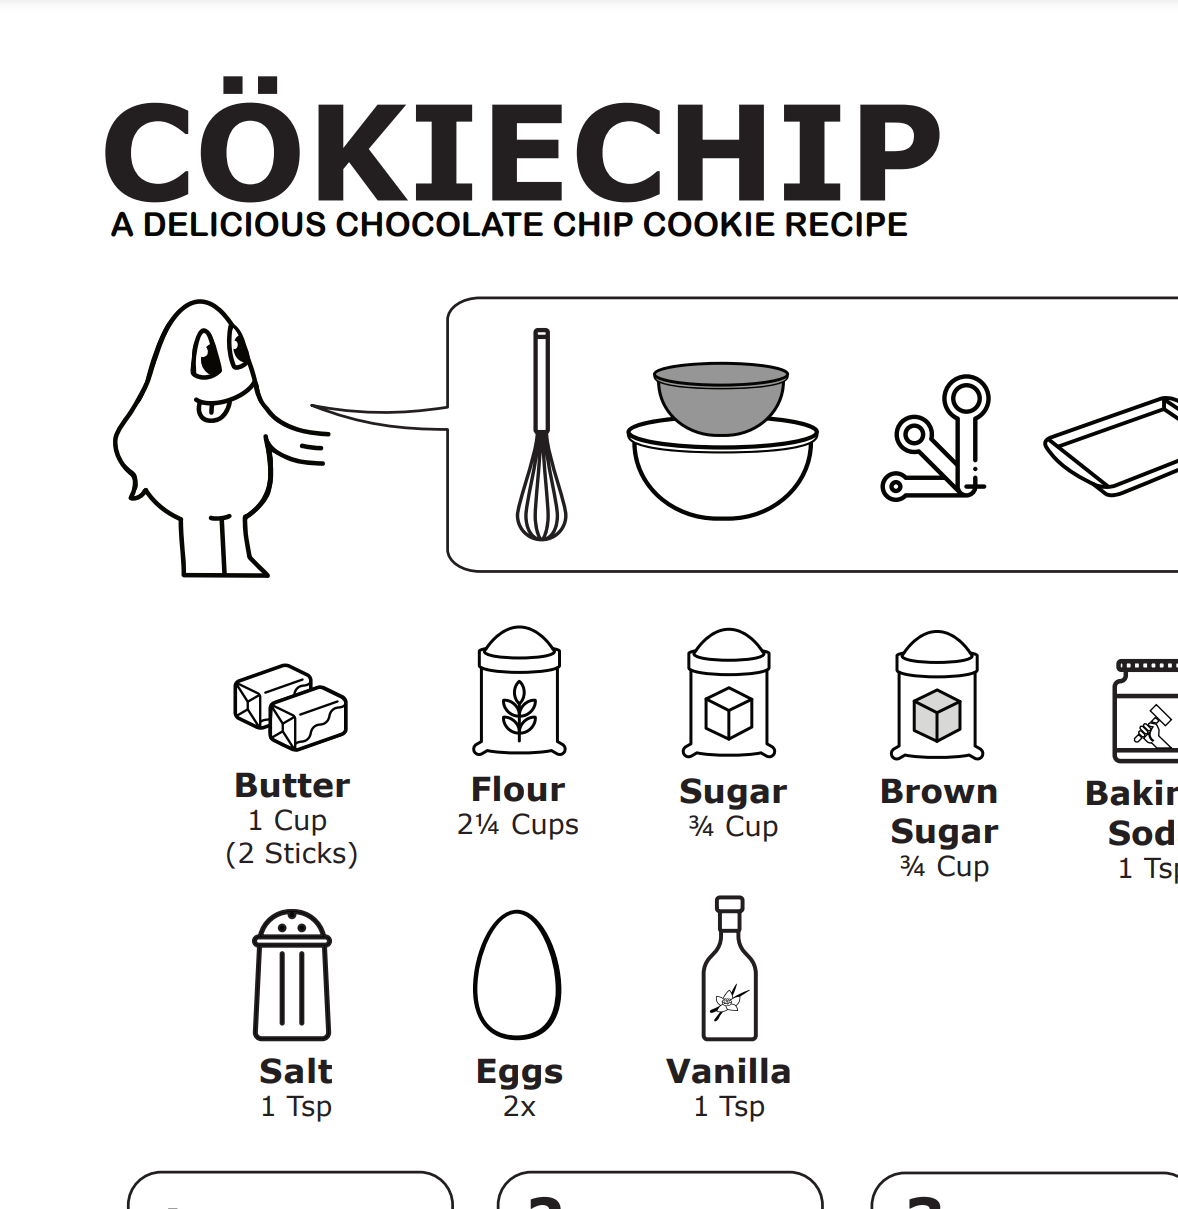 Chocolate Chip Cookie Recipe: CÖKIECHIP